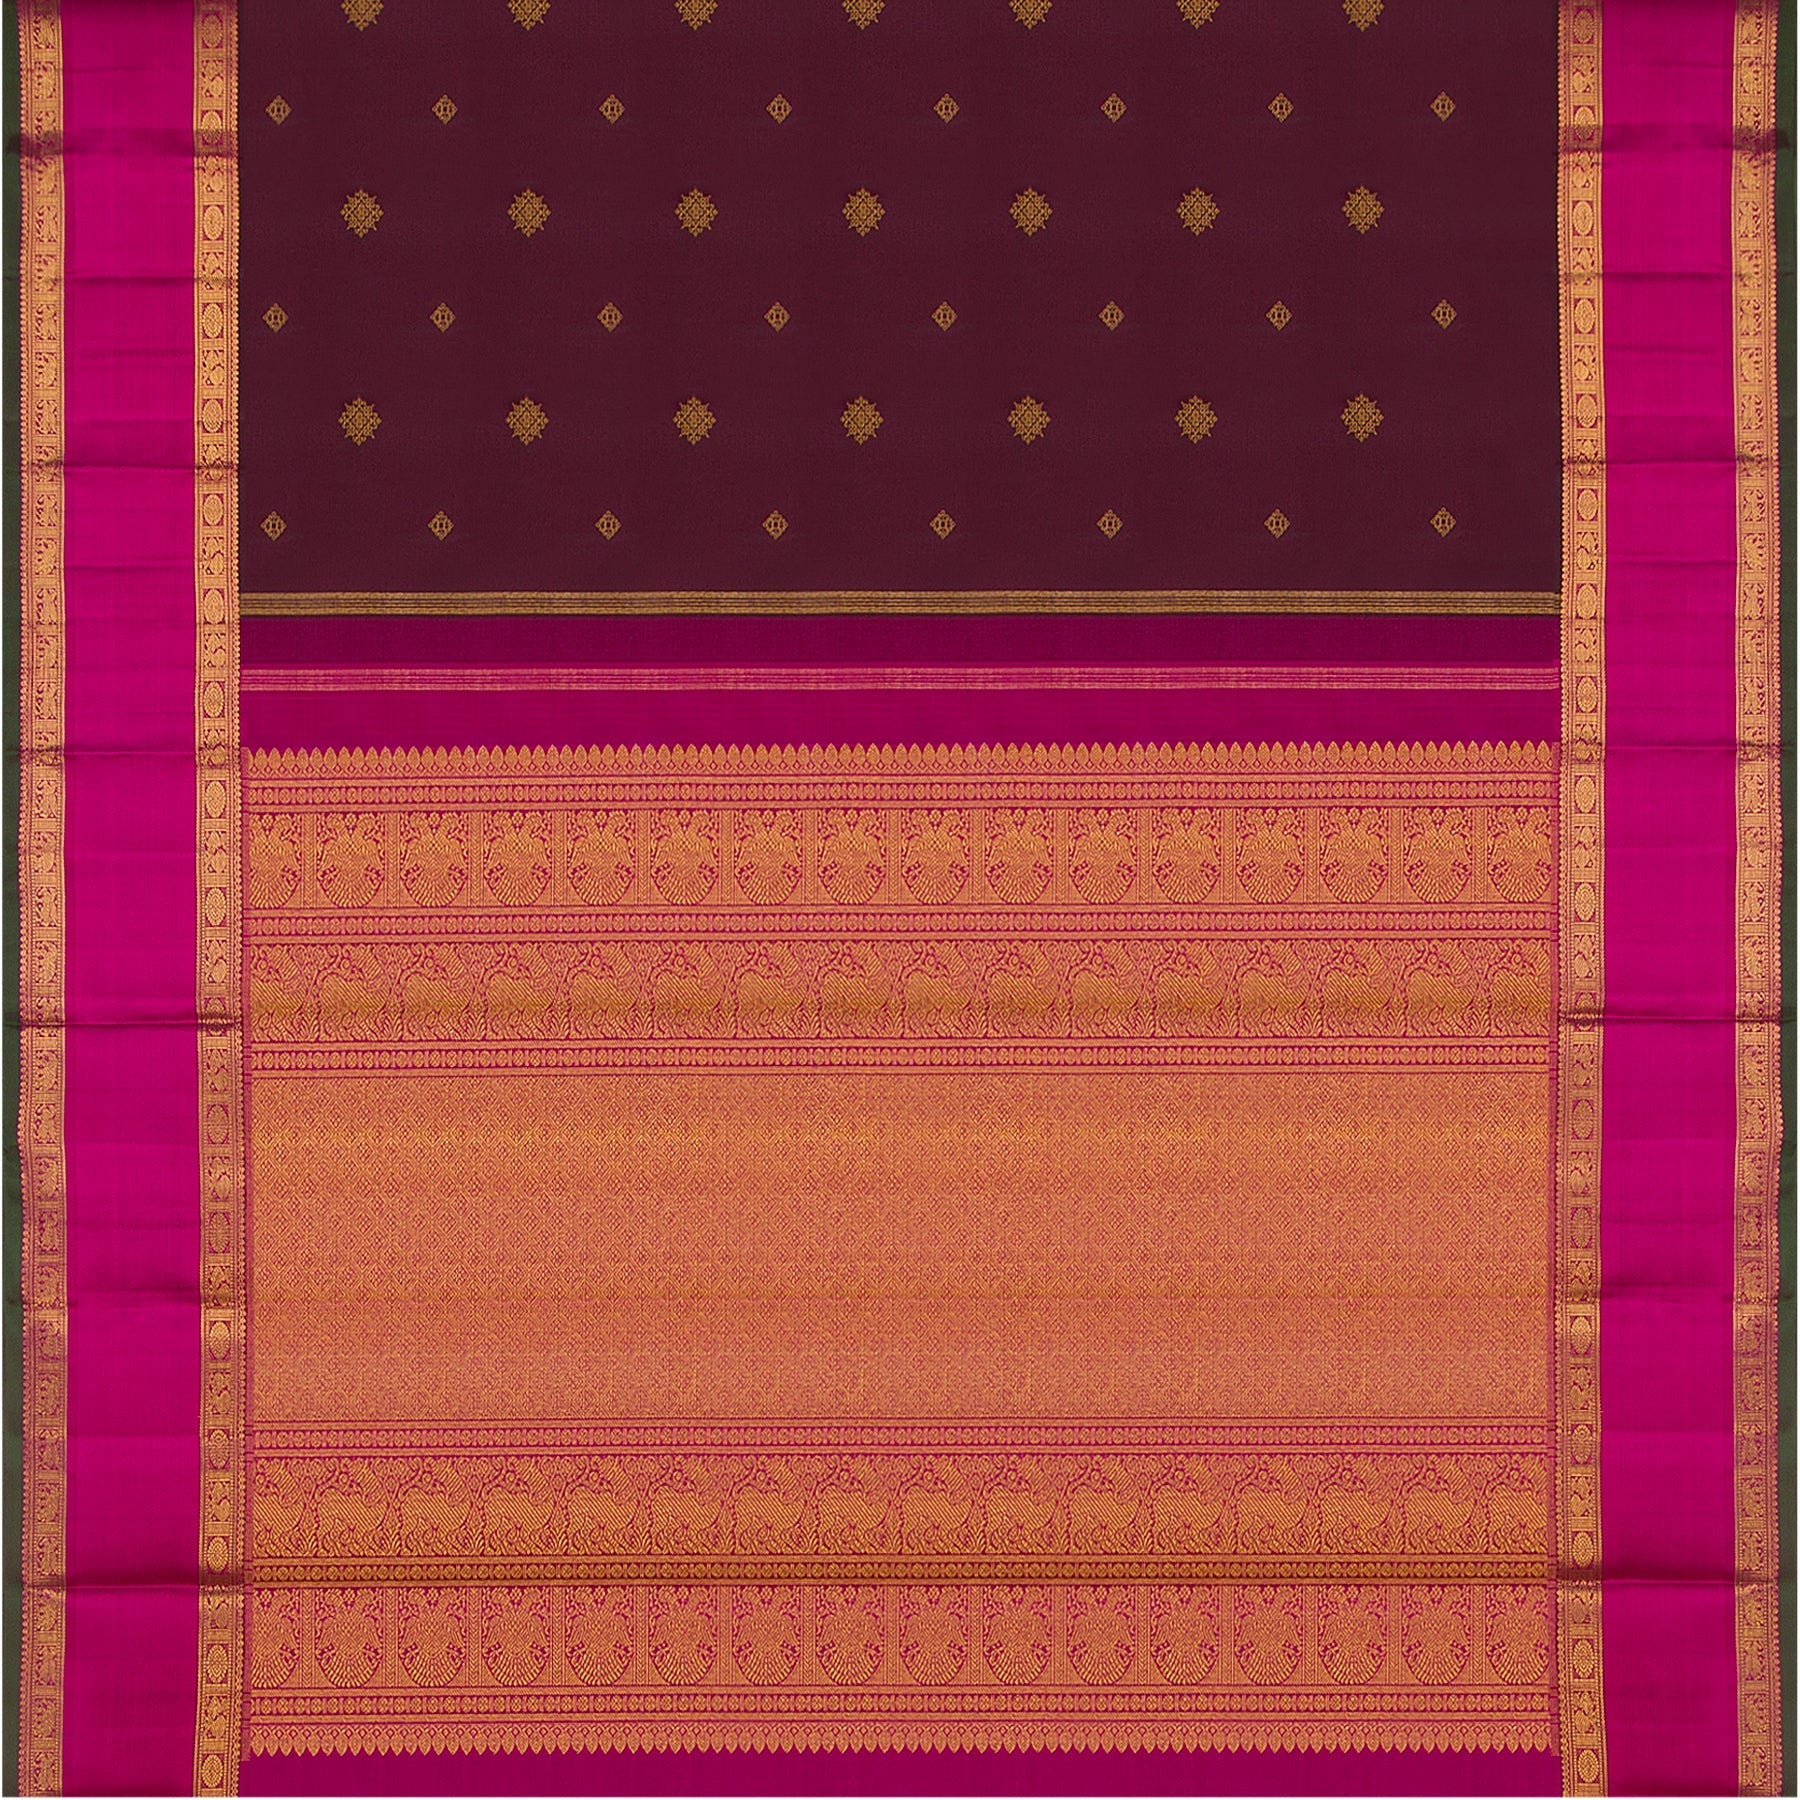 Kanakavalli Kanjivaram Silk Sari 23-595-HS001-10631 - Full View